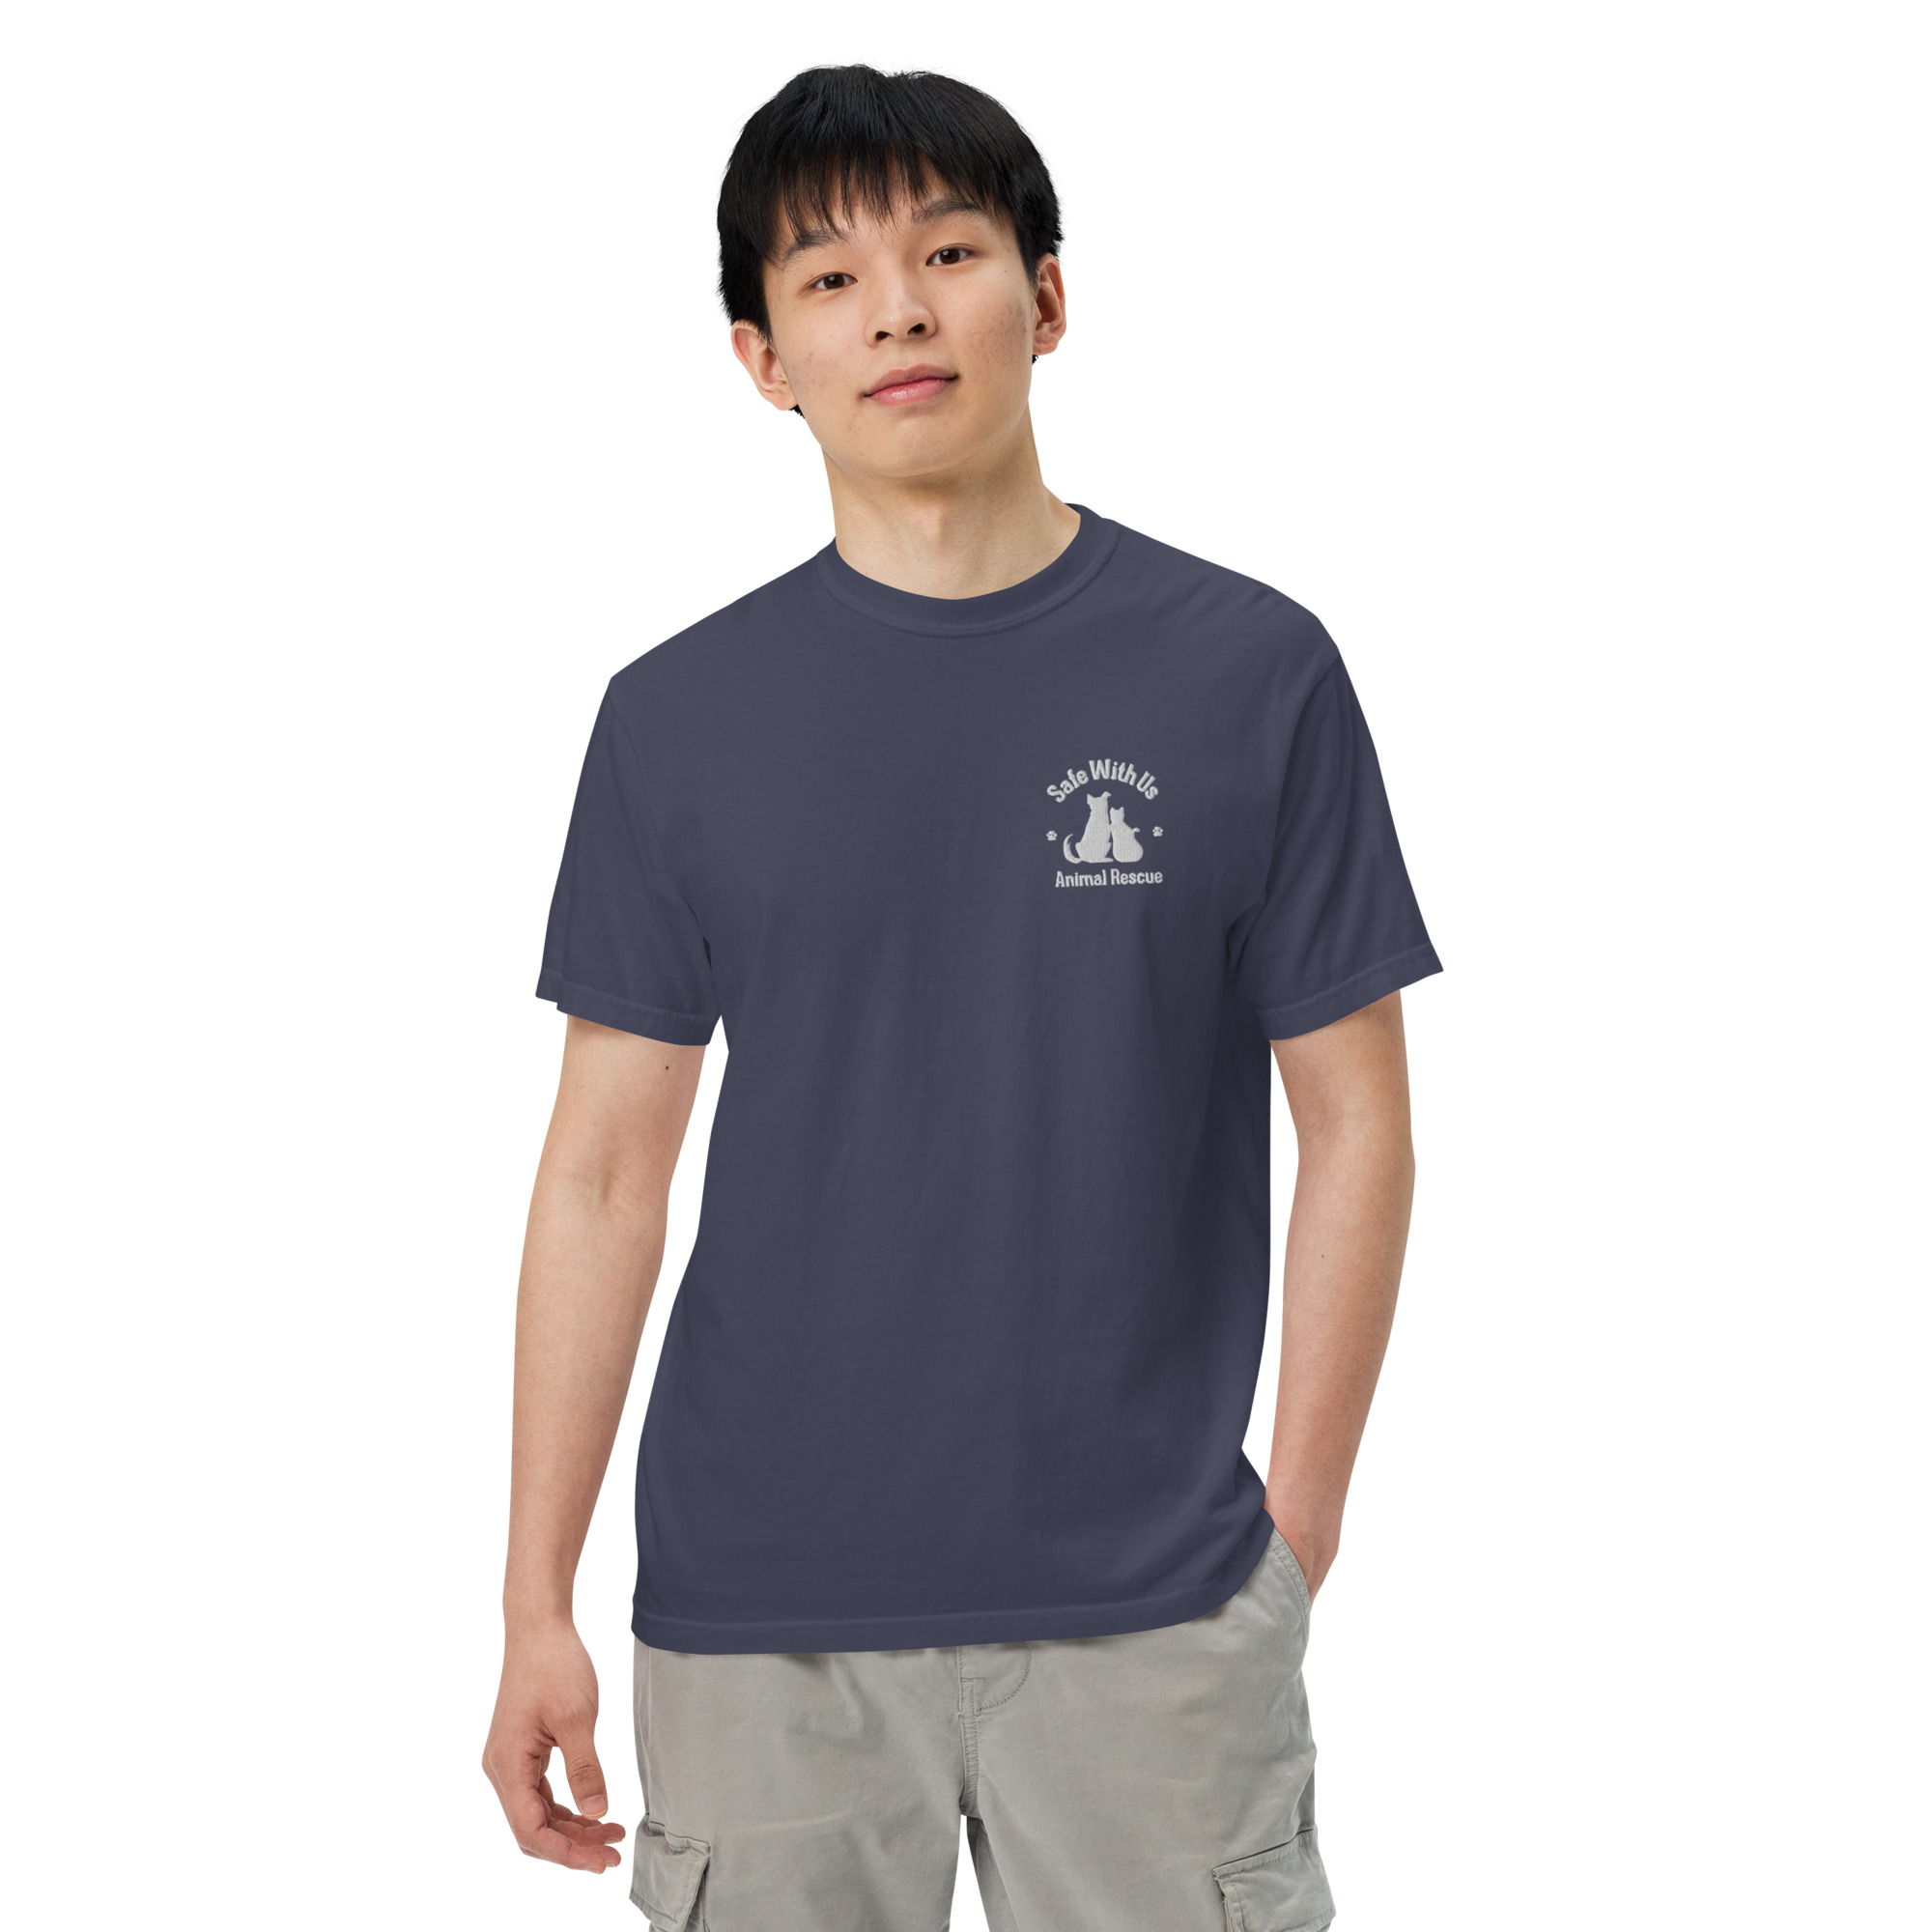 mens-garment-dyed-heavyweight-t-shirt-true-navy-front-2-6415fedc25892.jpg